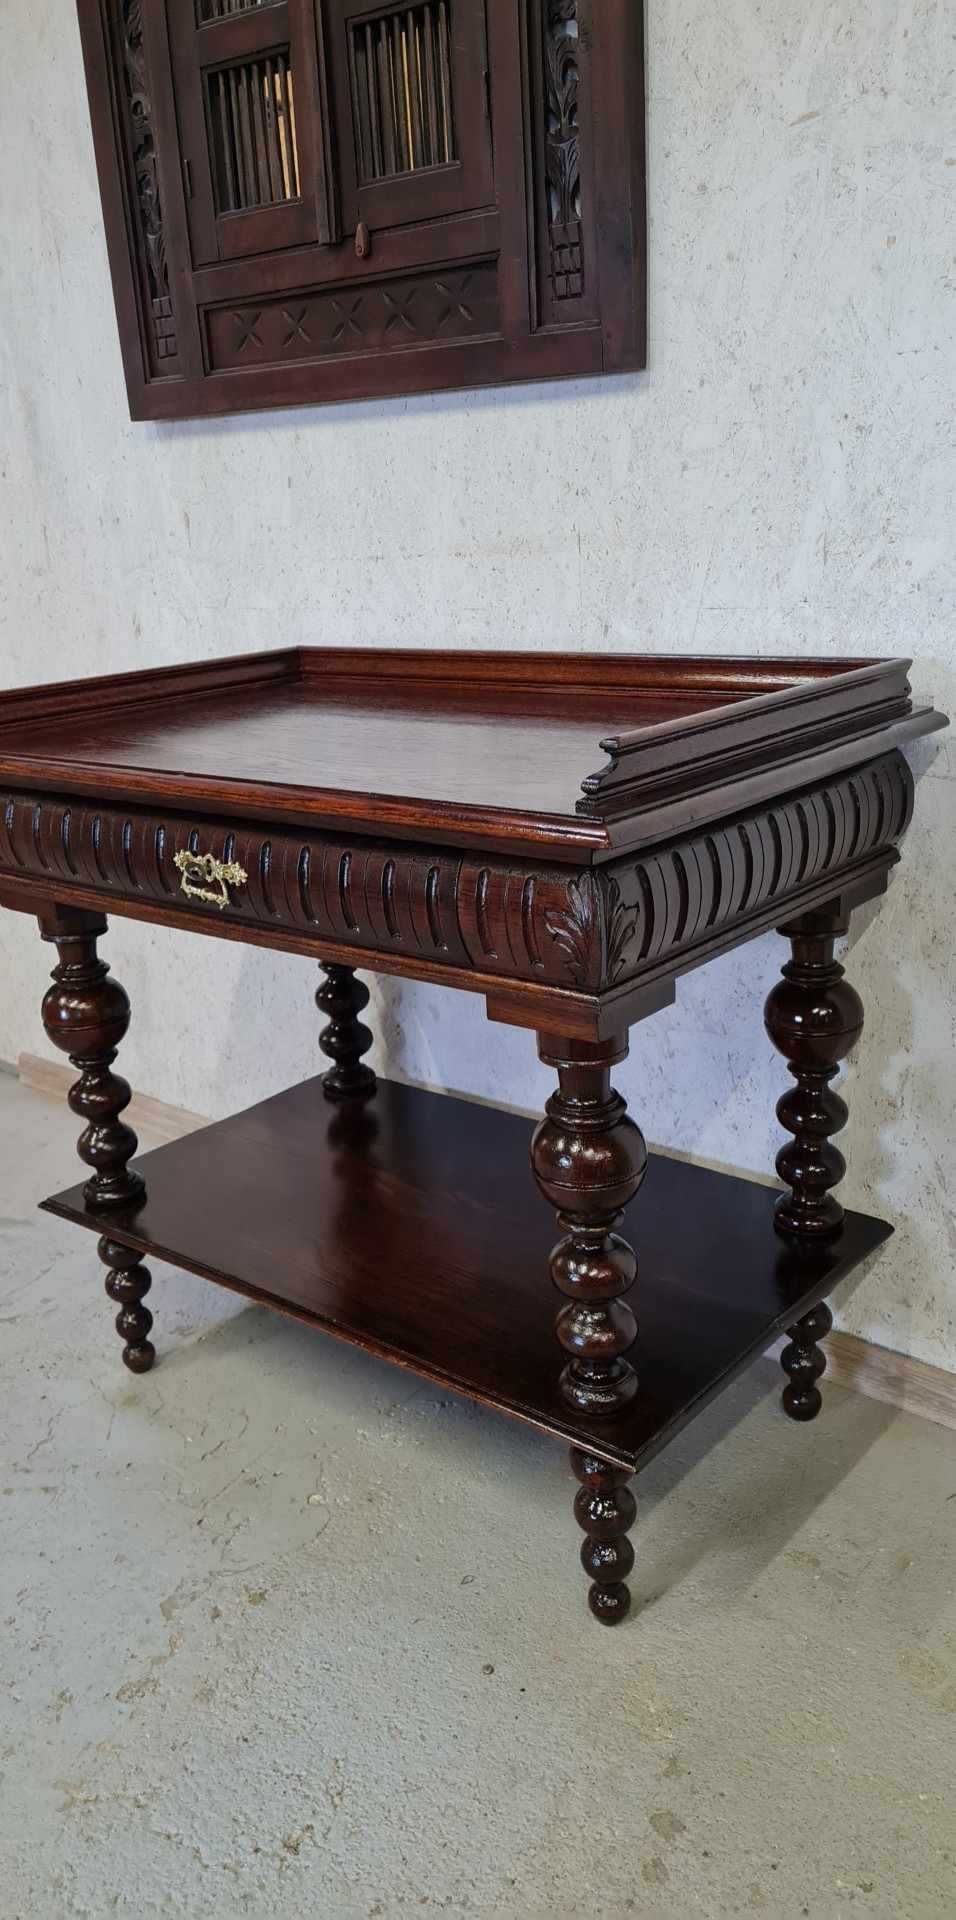 dębowy stolik  - antyk  - po renowacji - ok 1850r..